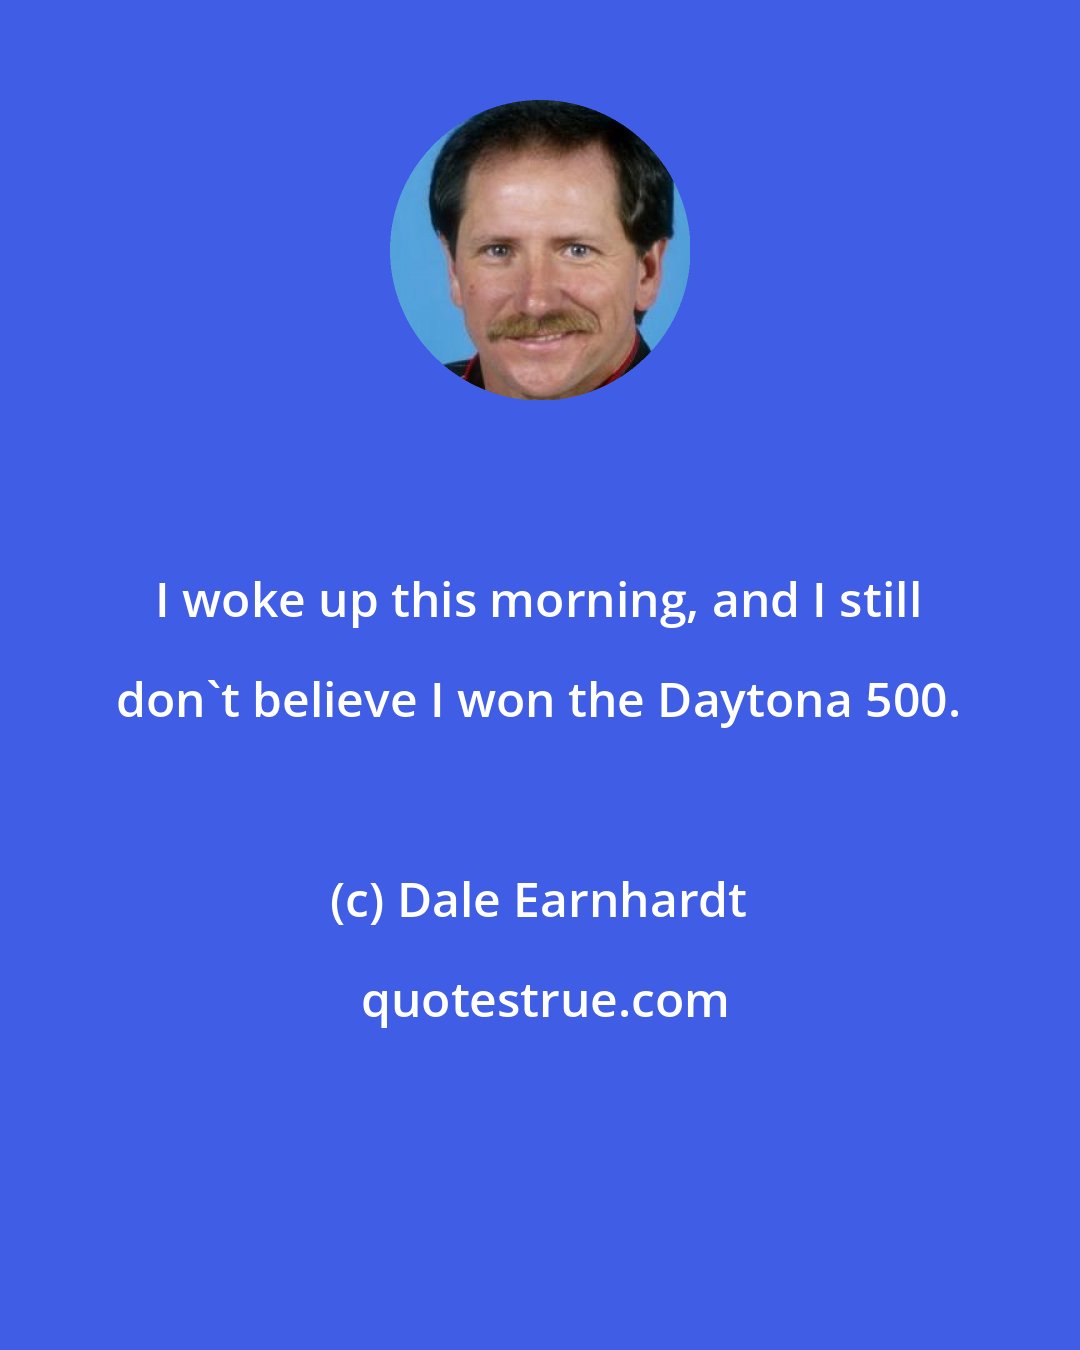 Dale Earnhardt: I woke up this morning, and I still don't believe I won the Daytona 500.